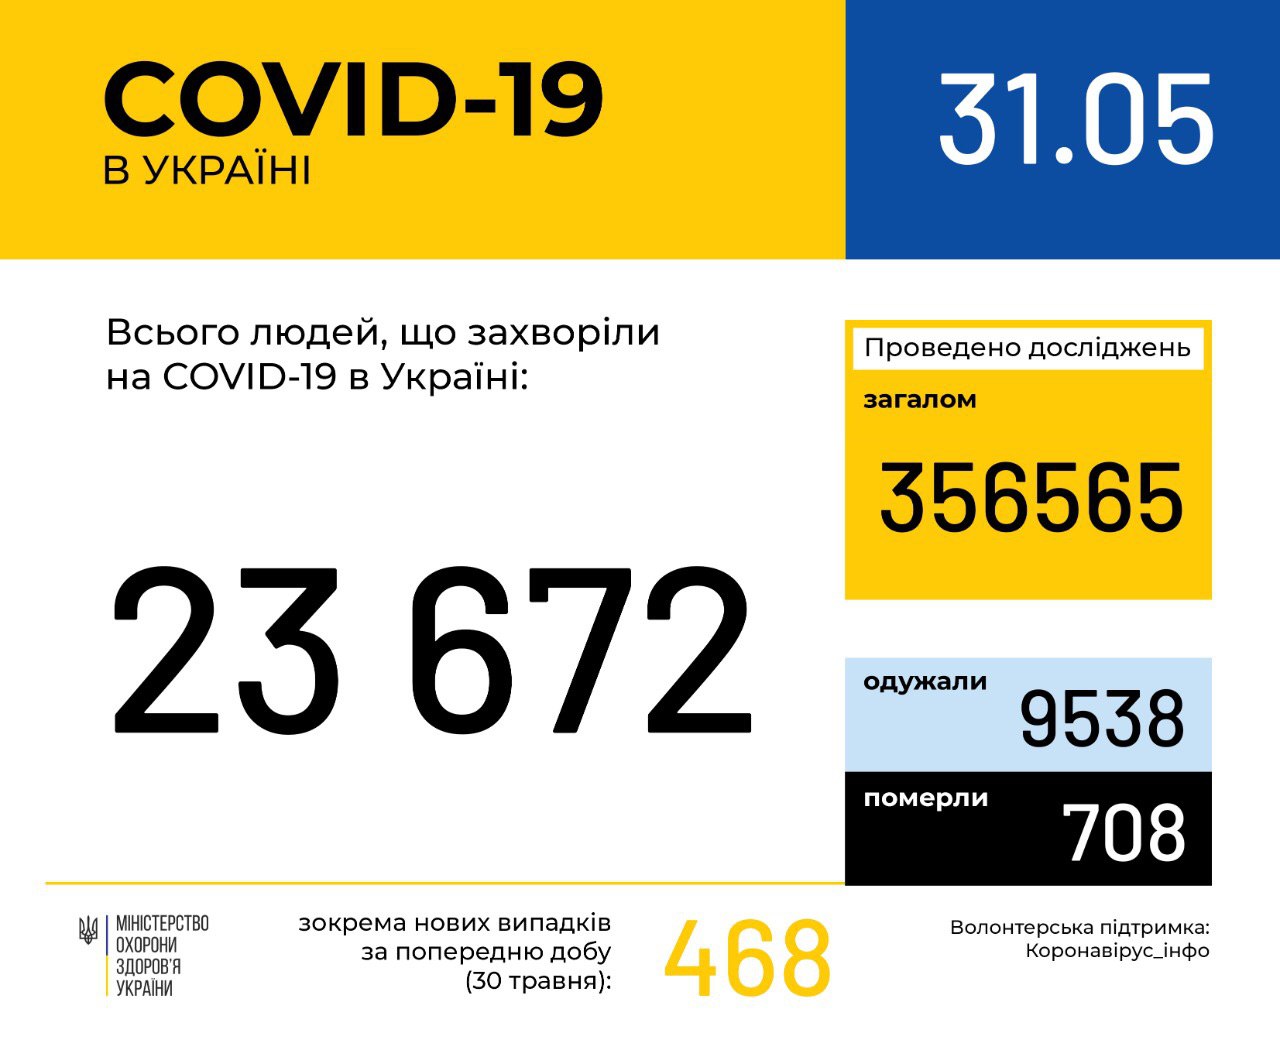 В Україні зафіксовано 23672 випадки коронавірусної хвороби COVID-19, - МОЗ